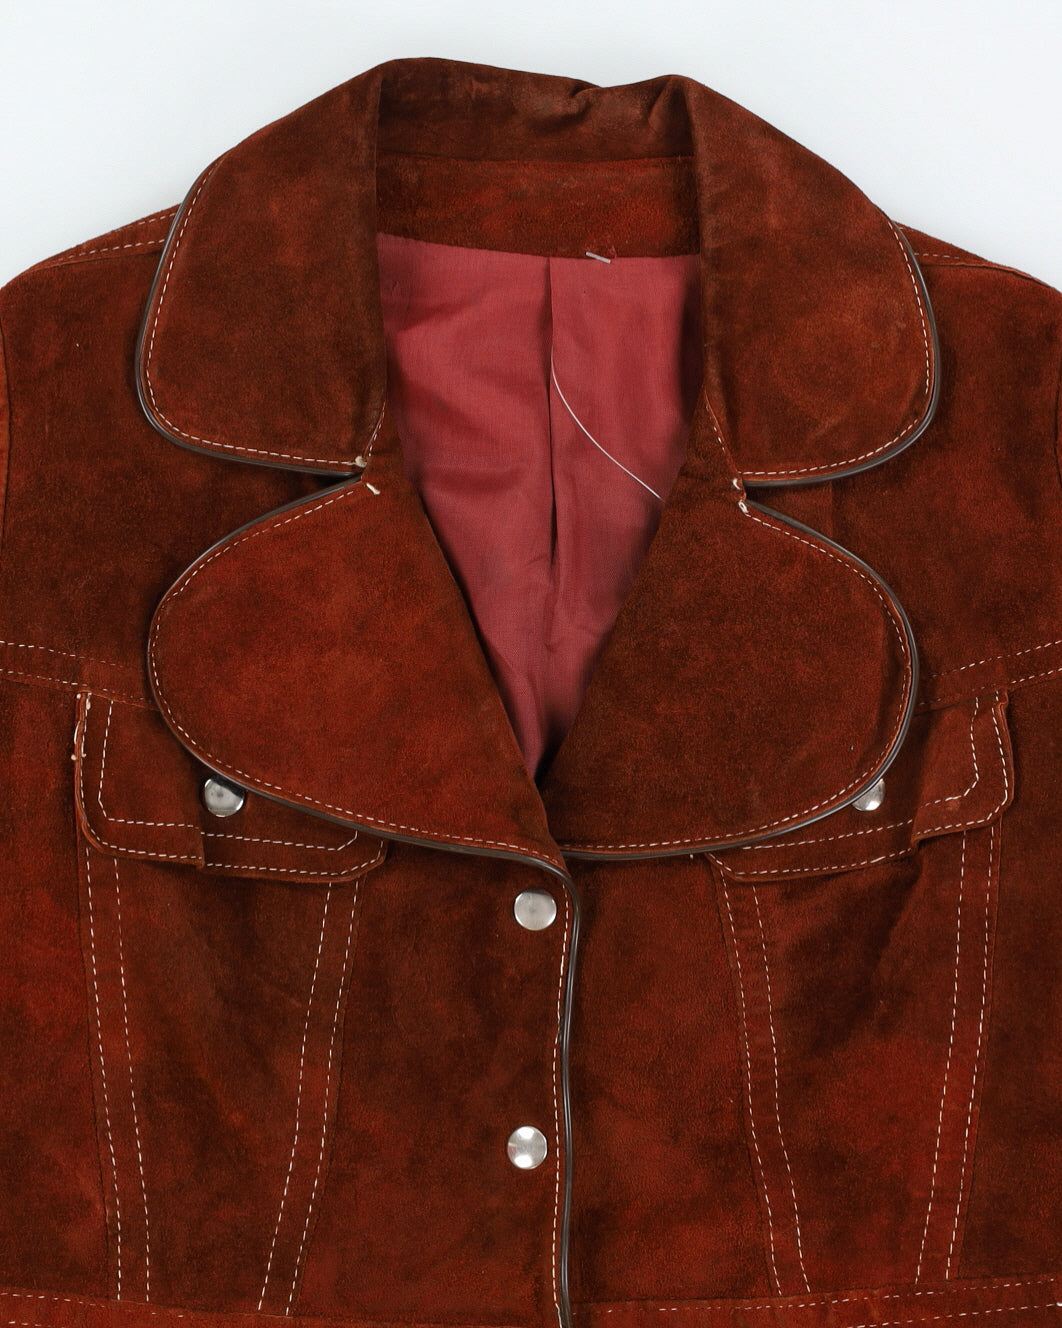 Vintage 1970s Brown Suede Jacket - S